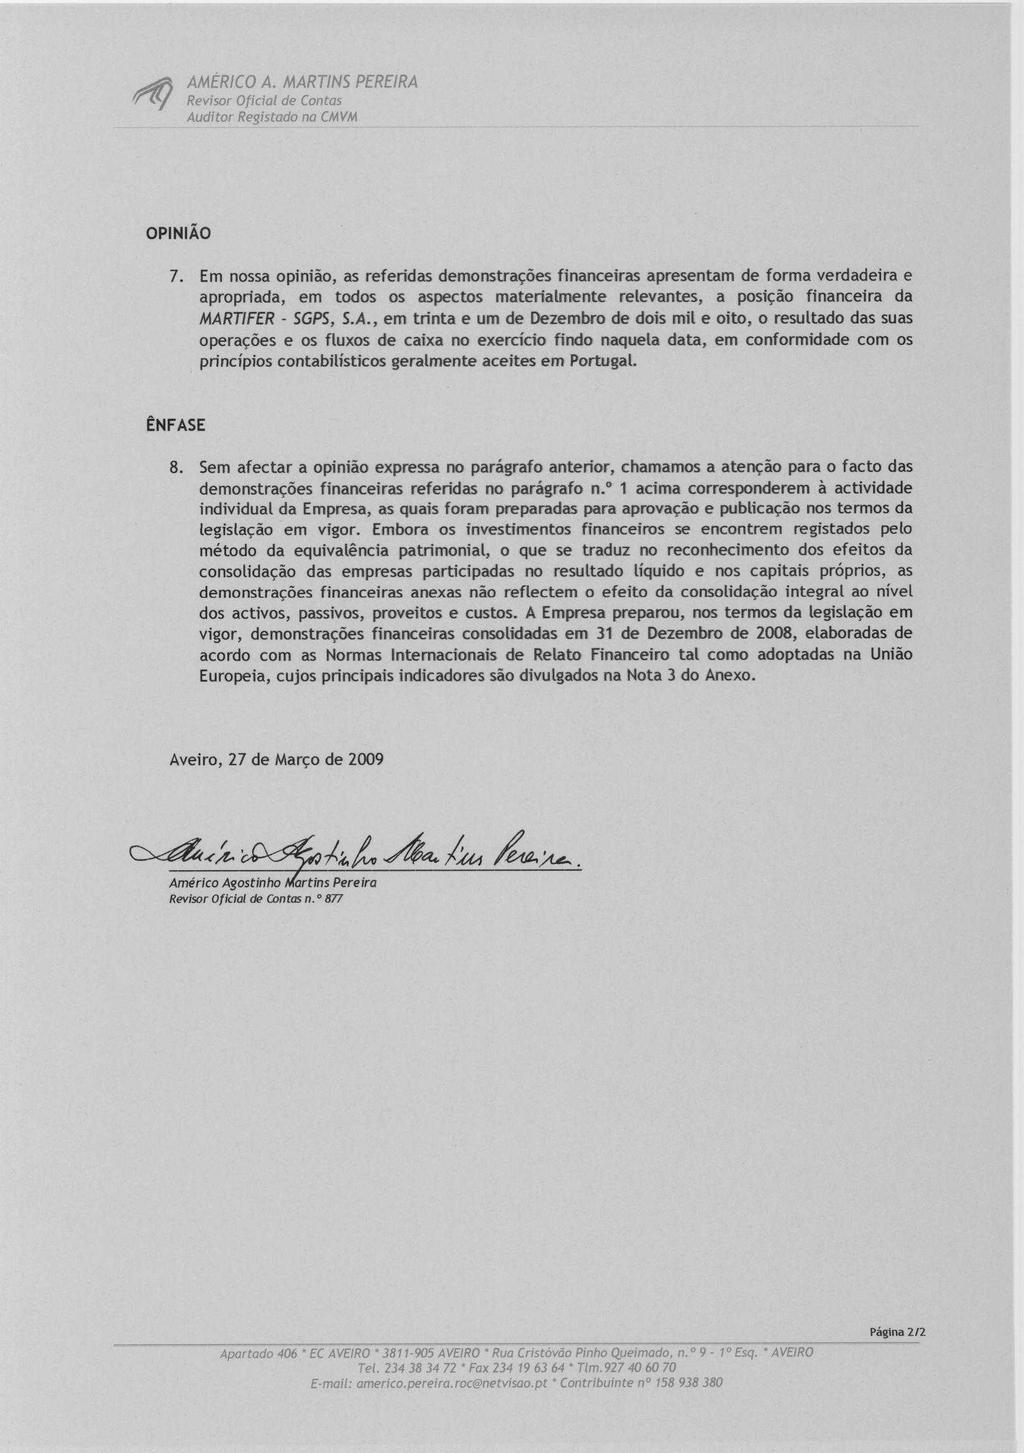 AMERICO A. MARTINS PEREIRA Revisor Oficial de Contas Auditor Registado no CMVM OPINIAO 7.